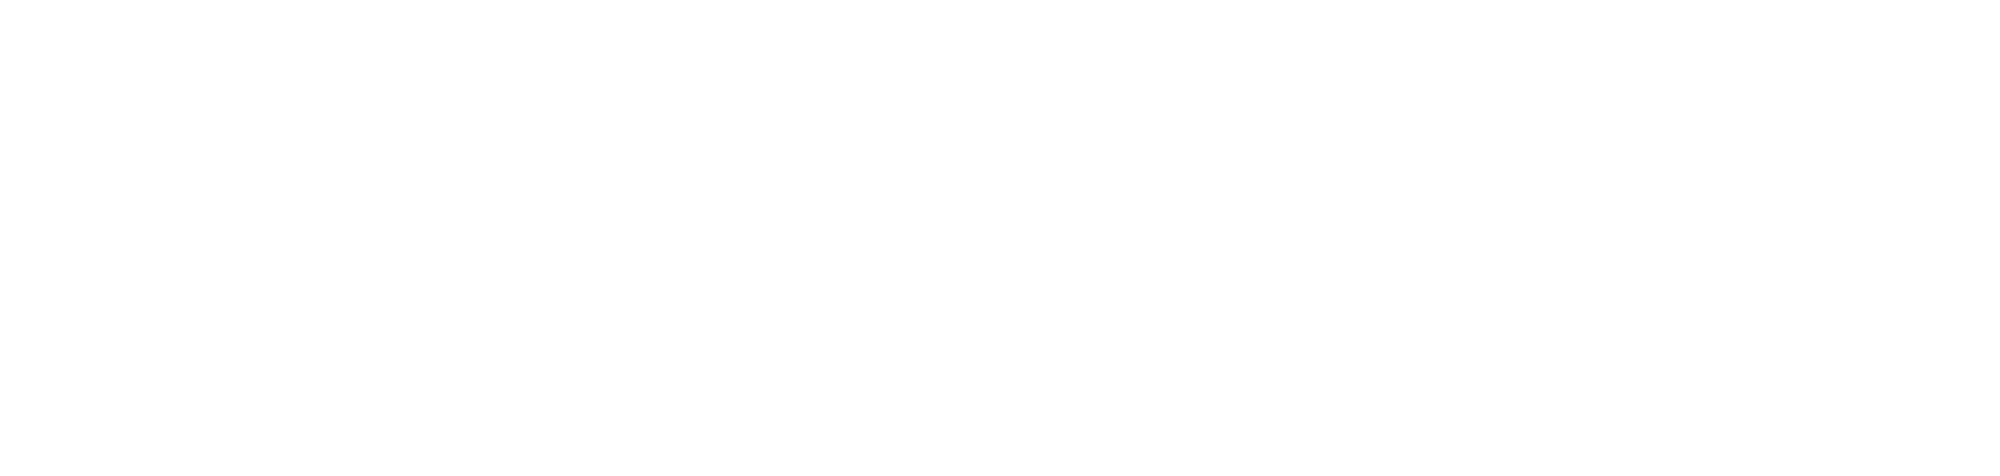 KFUPM Undergraduate Admission